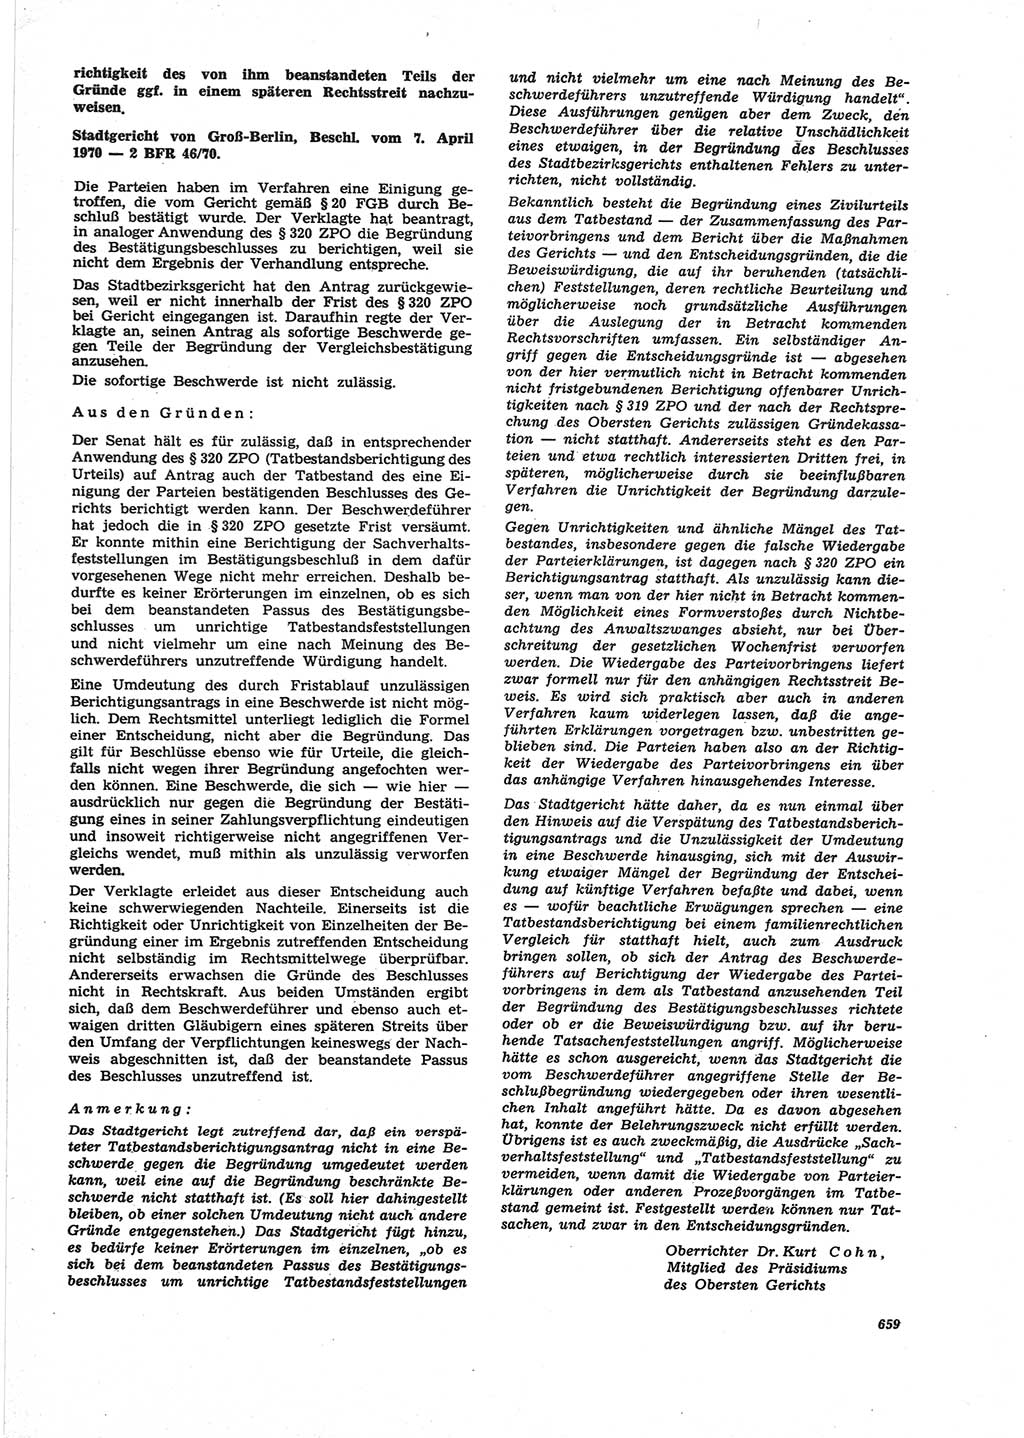 Neue Justiz (NJ), Zeitschrift für Recht und Rechtswissenschaft [Deutsche Demokratische Republik (DDR)], 25. Jahrgang 1971, Seite 659 (NJ DDR 1971, S. 659)